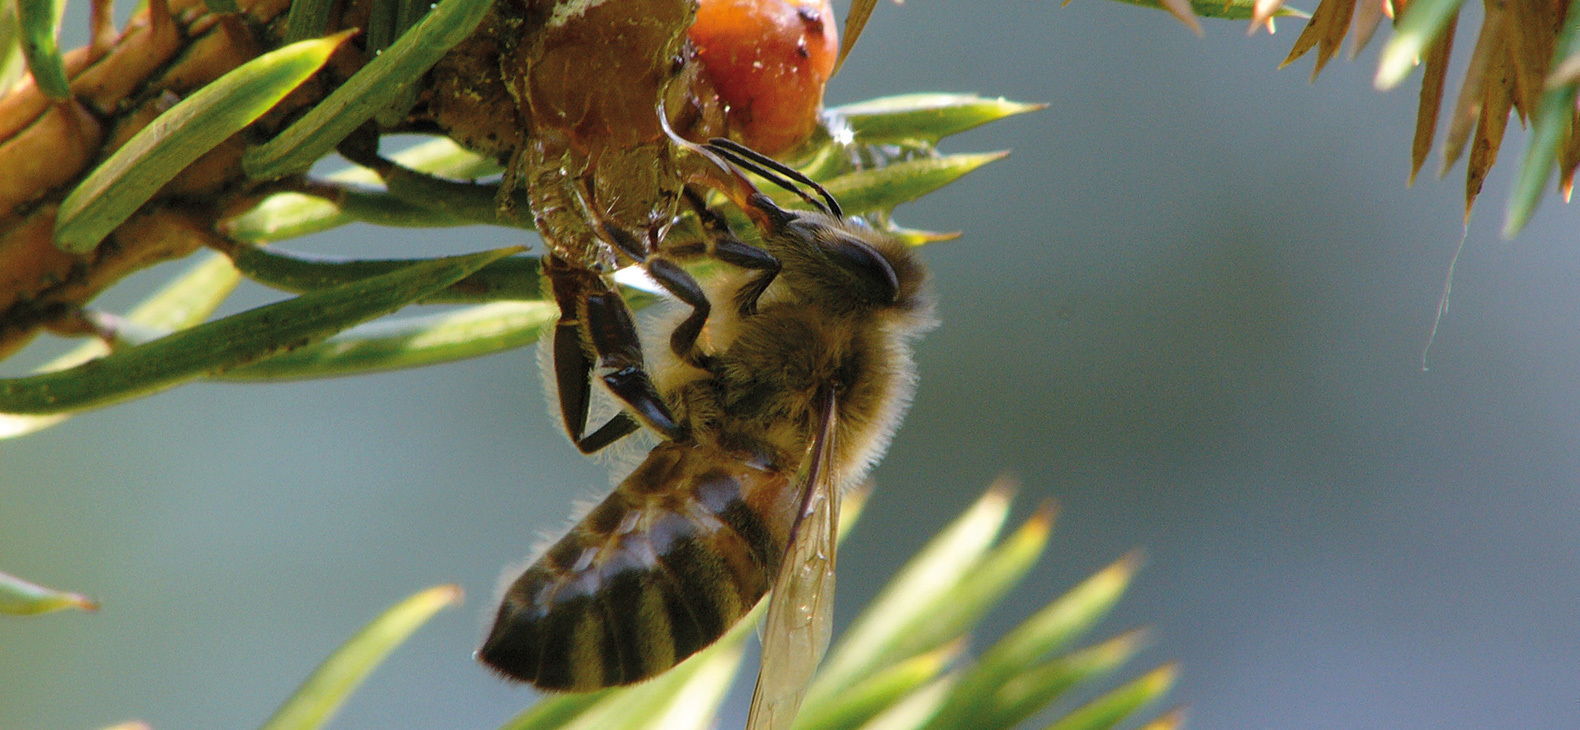 Foto einer Biene in Nahaufnahme. Sie hängt an einer Tannenzapfen und saugt an einer zähen Flüssigkeit, dem Honigtau